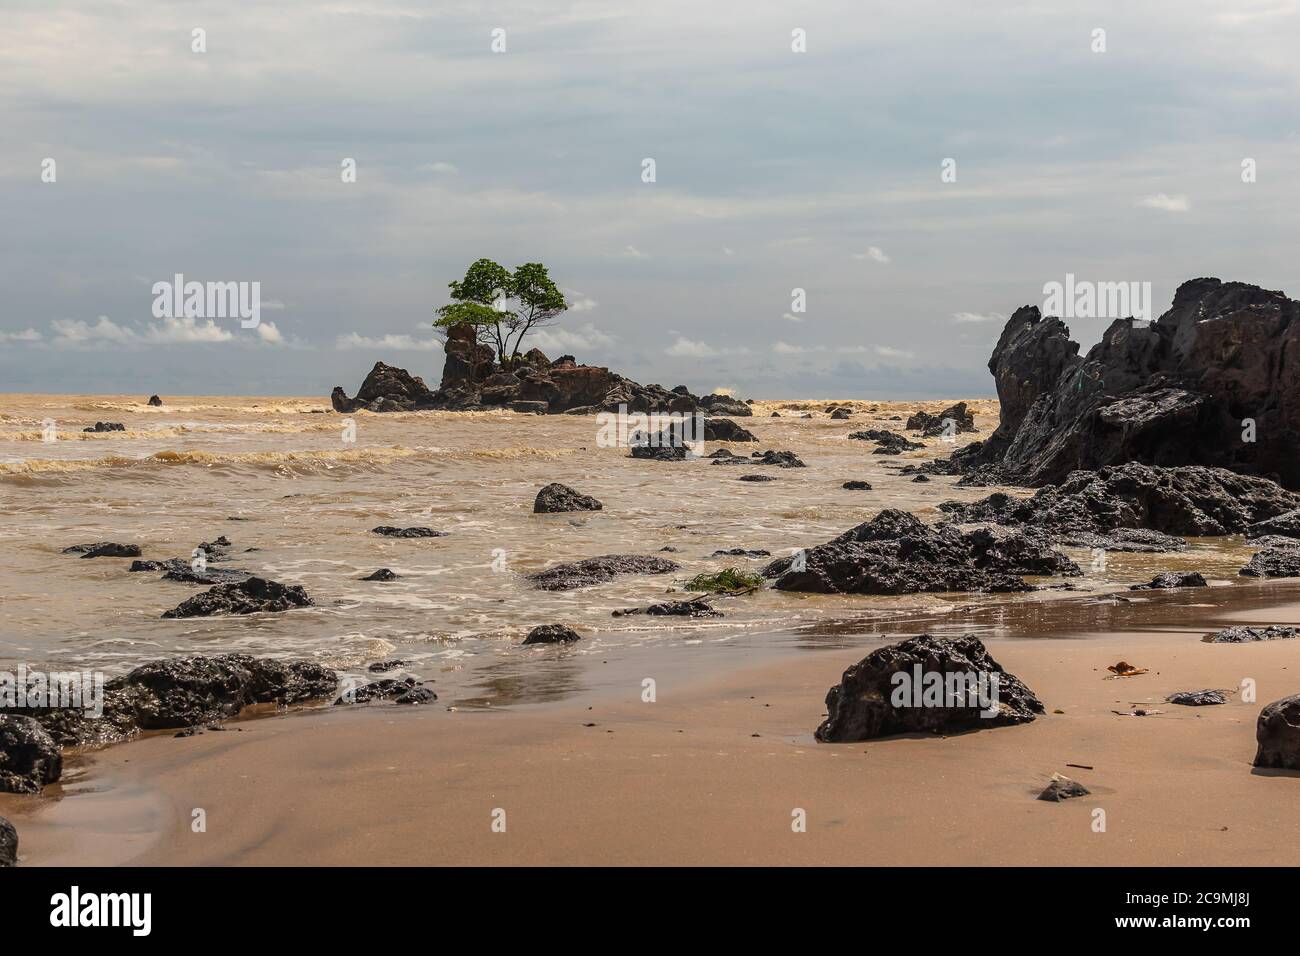 Afrikas Goldküste mit gelbem Meer und einer Insel mit schwarzen Felsen, wo ein Baum wächst in rauen Bedingungen, der Ort befindet sich in Ghana Westafrika Stockfoto